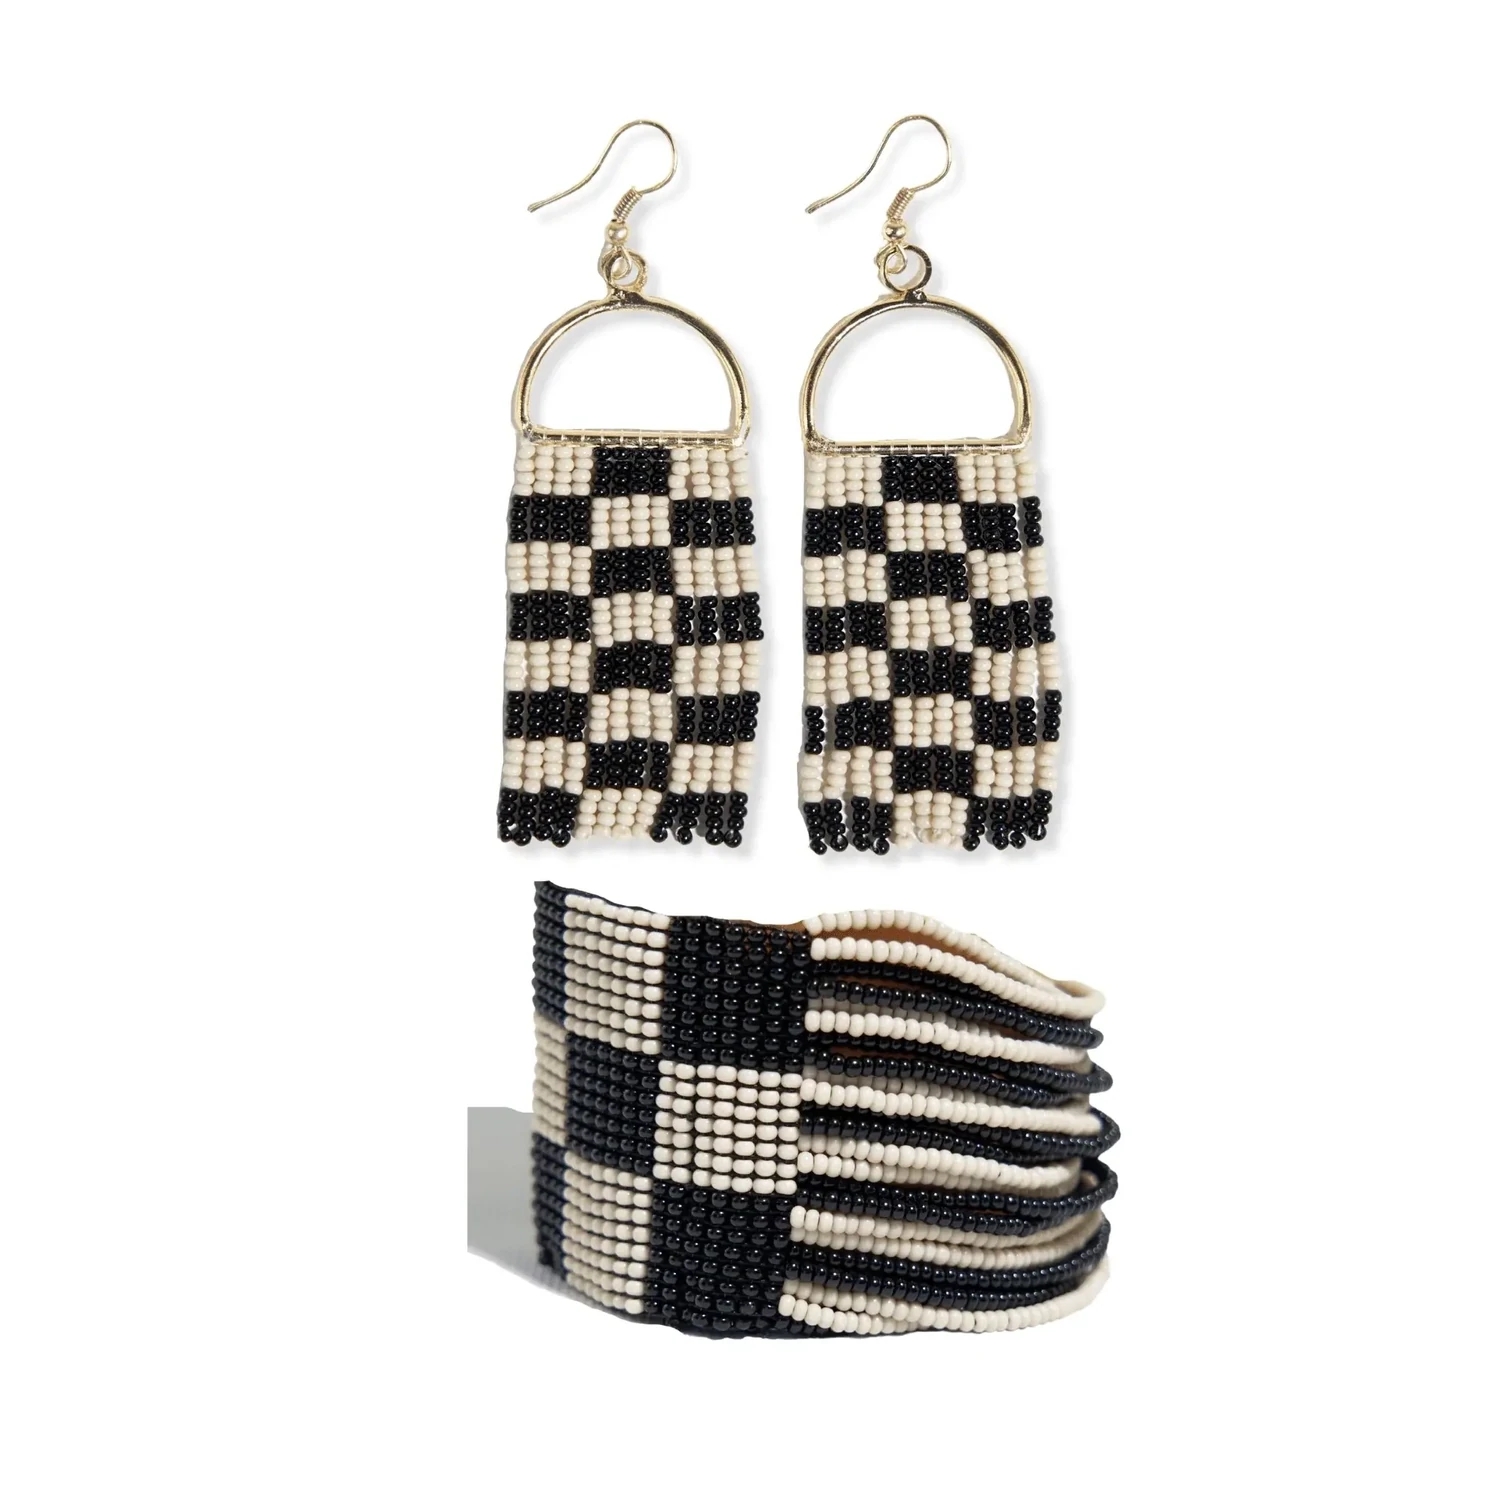 BOXED SET: Allison + Olive checkered beaded earrings and bracelet set Black/White